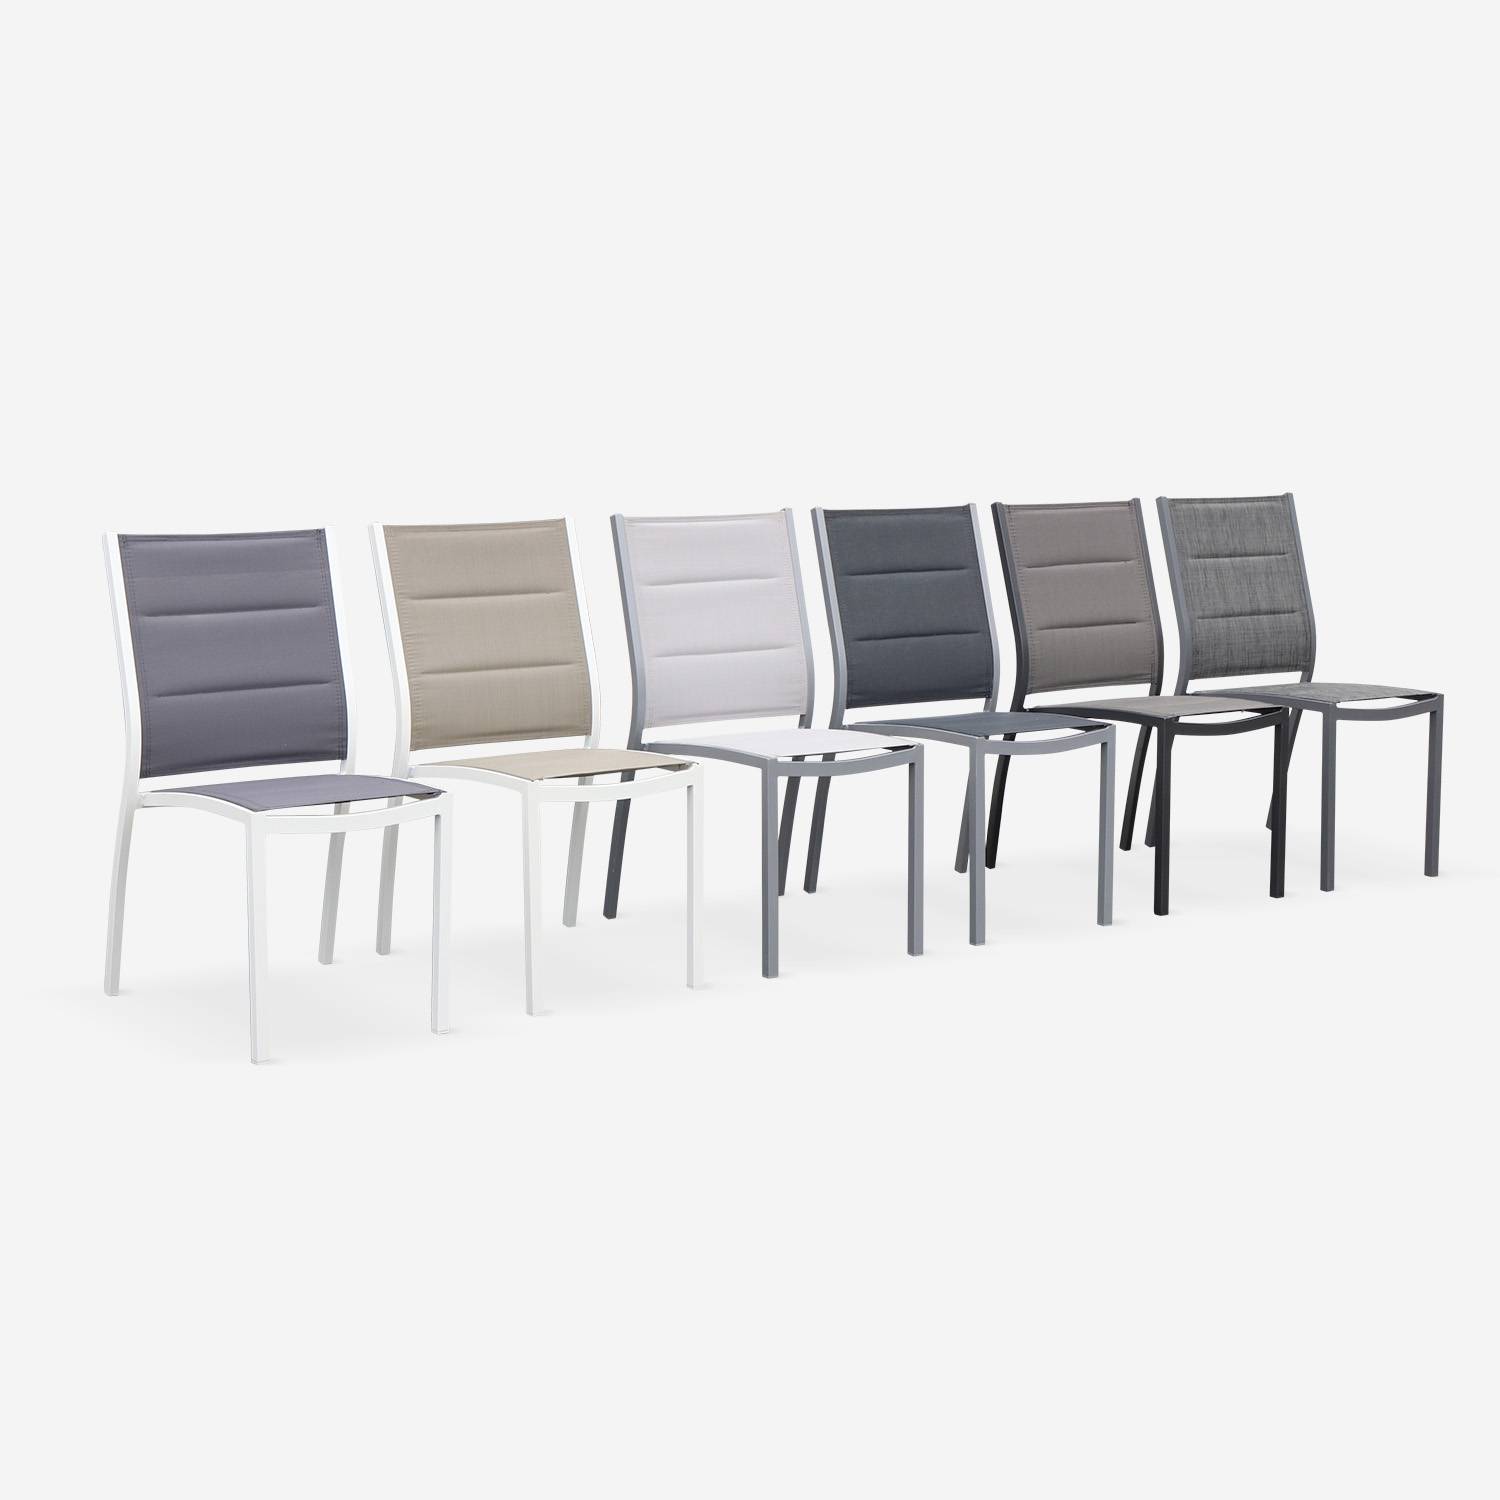 Coppia di sedie Chicago/Odenton in alluminio e textilene colore grigio scuro Photo5